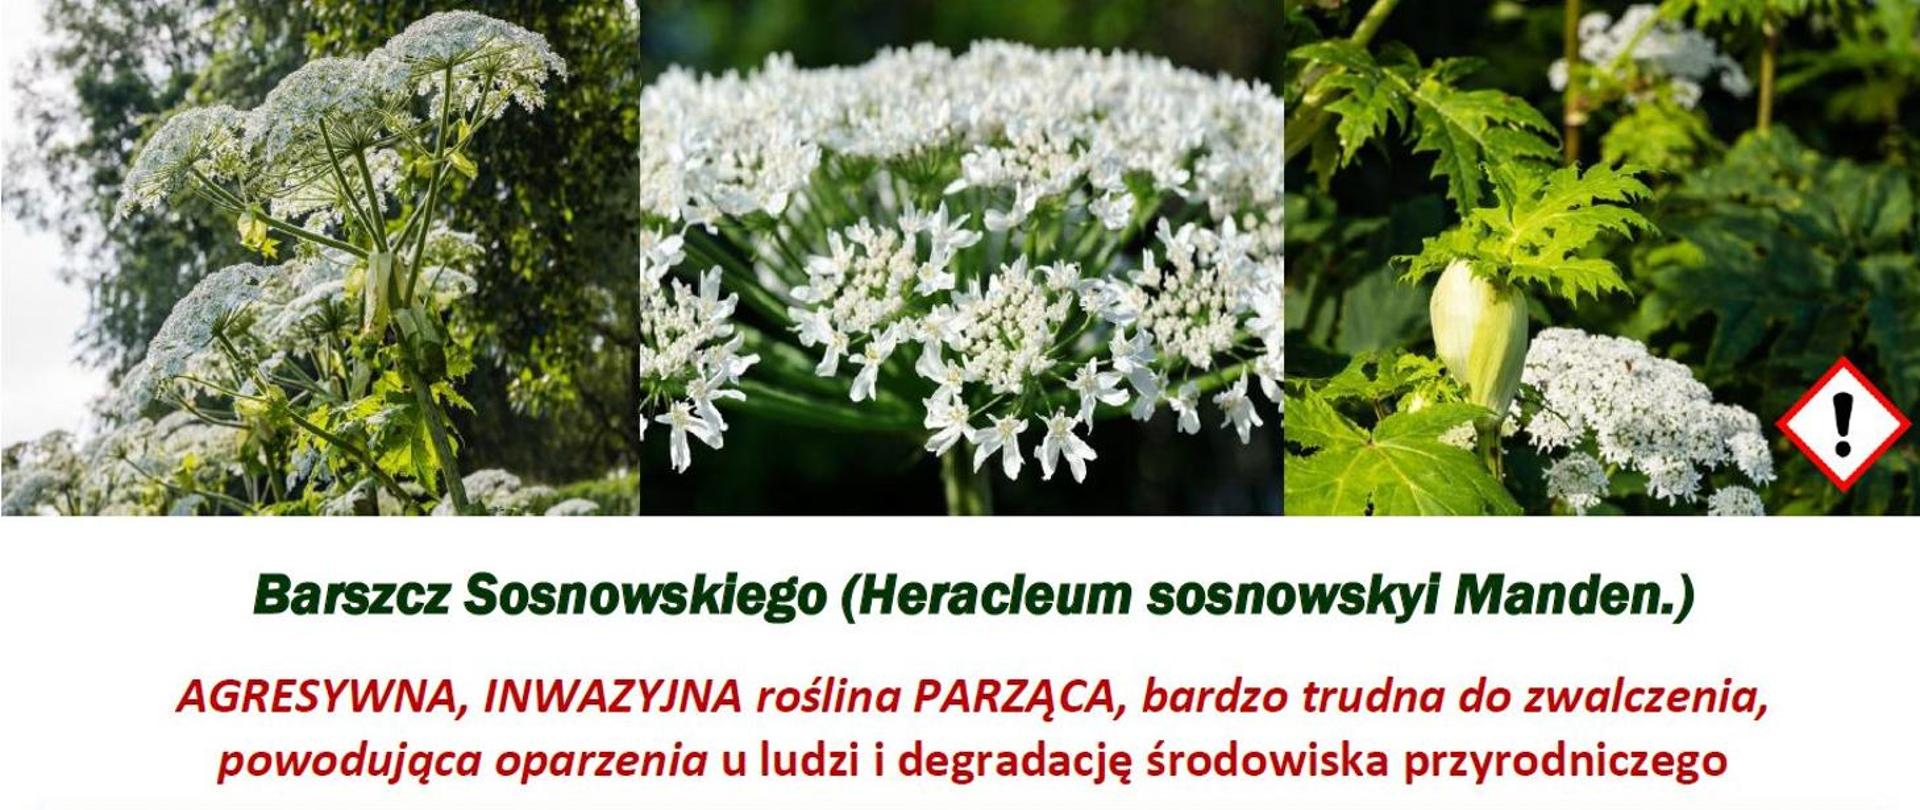 Barszcz Sosnowskiego (Heracleum sosnowskyi Manden.)